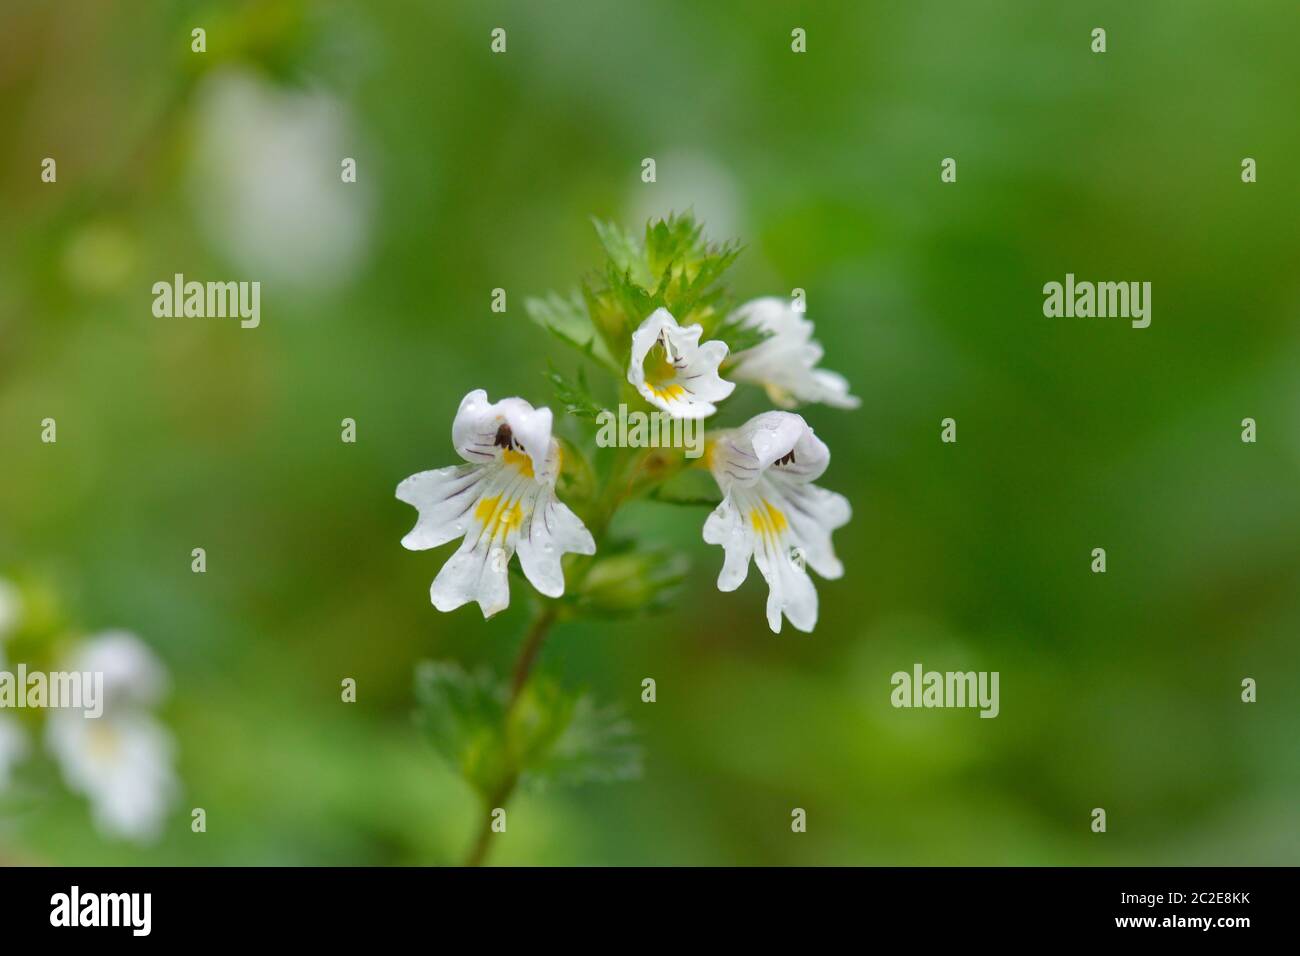 Flowers of the Eyebright Euphrasia rostkoviana. Blossom, ecosystem. Stock Photo